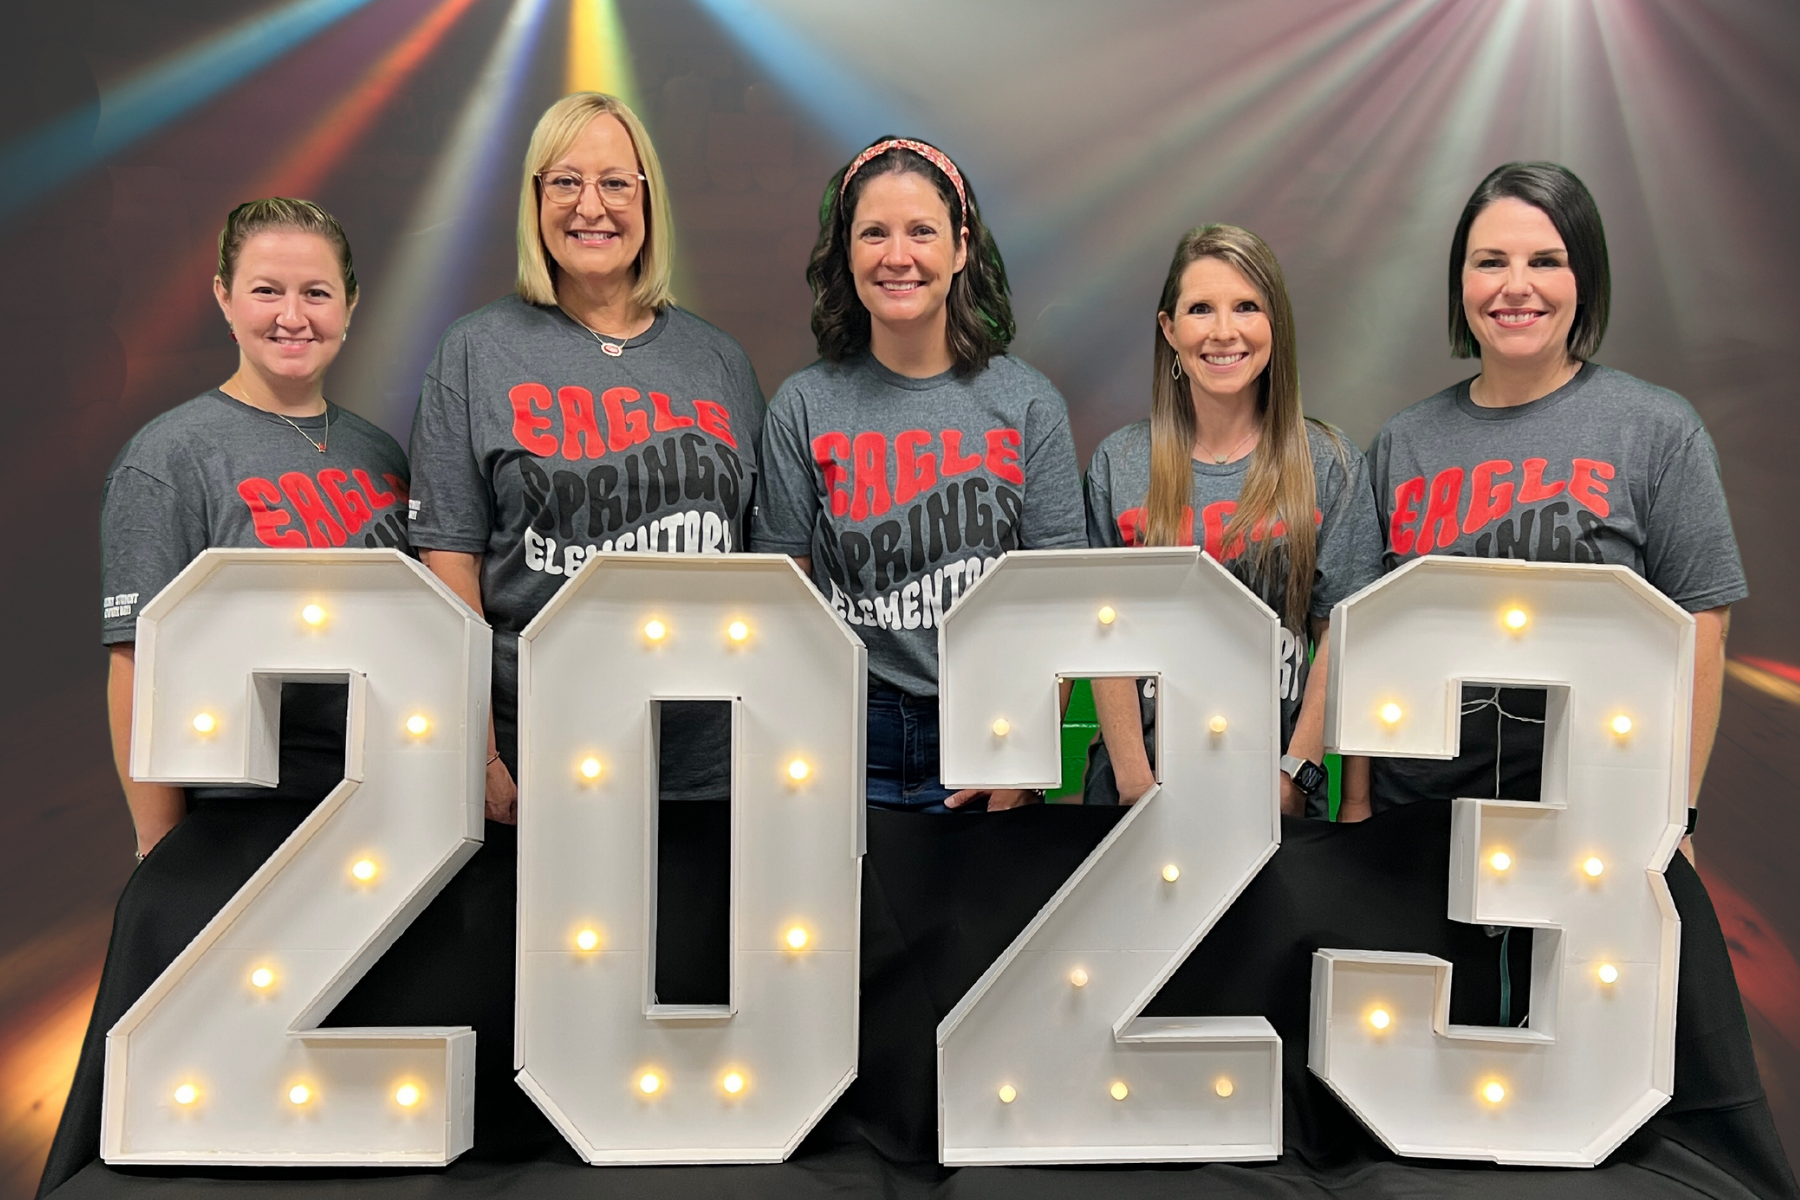 teachers posing behind lighted numbers 2023